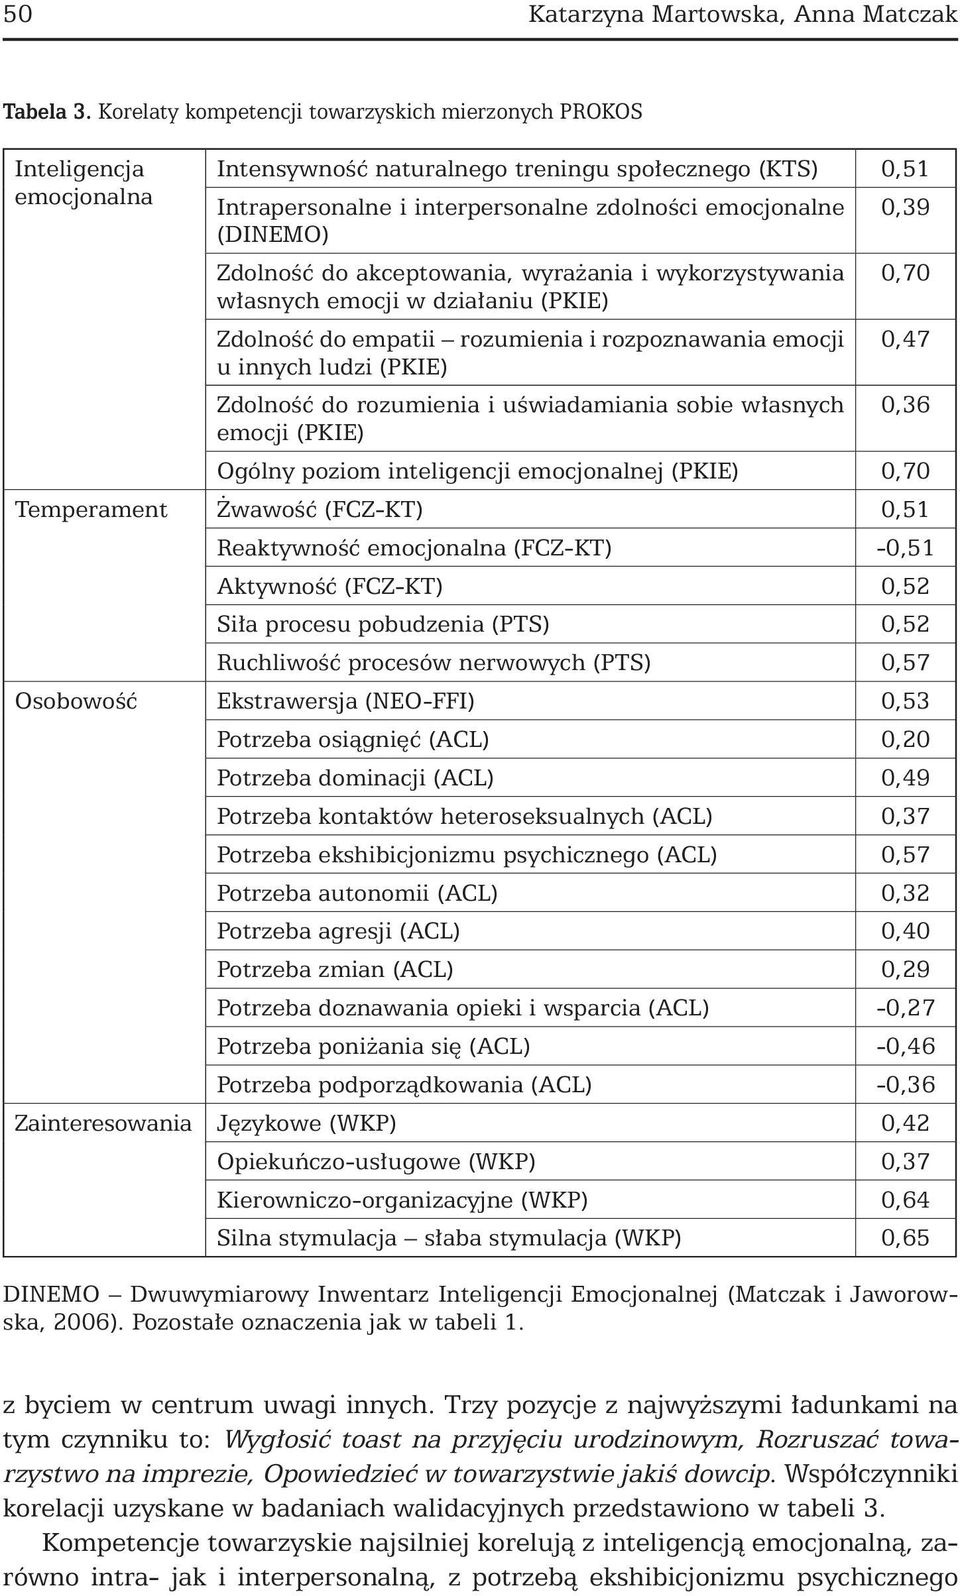 Pomiar kompetencji społecznych prezentacja nowego narzędzia diagnostycznego  - PDF Darmowe pobieranie